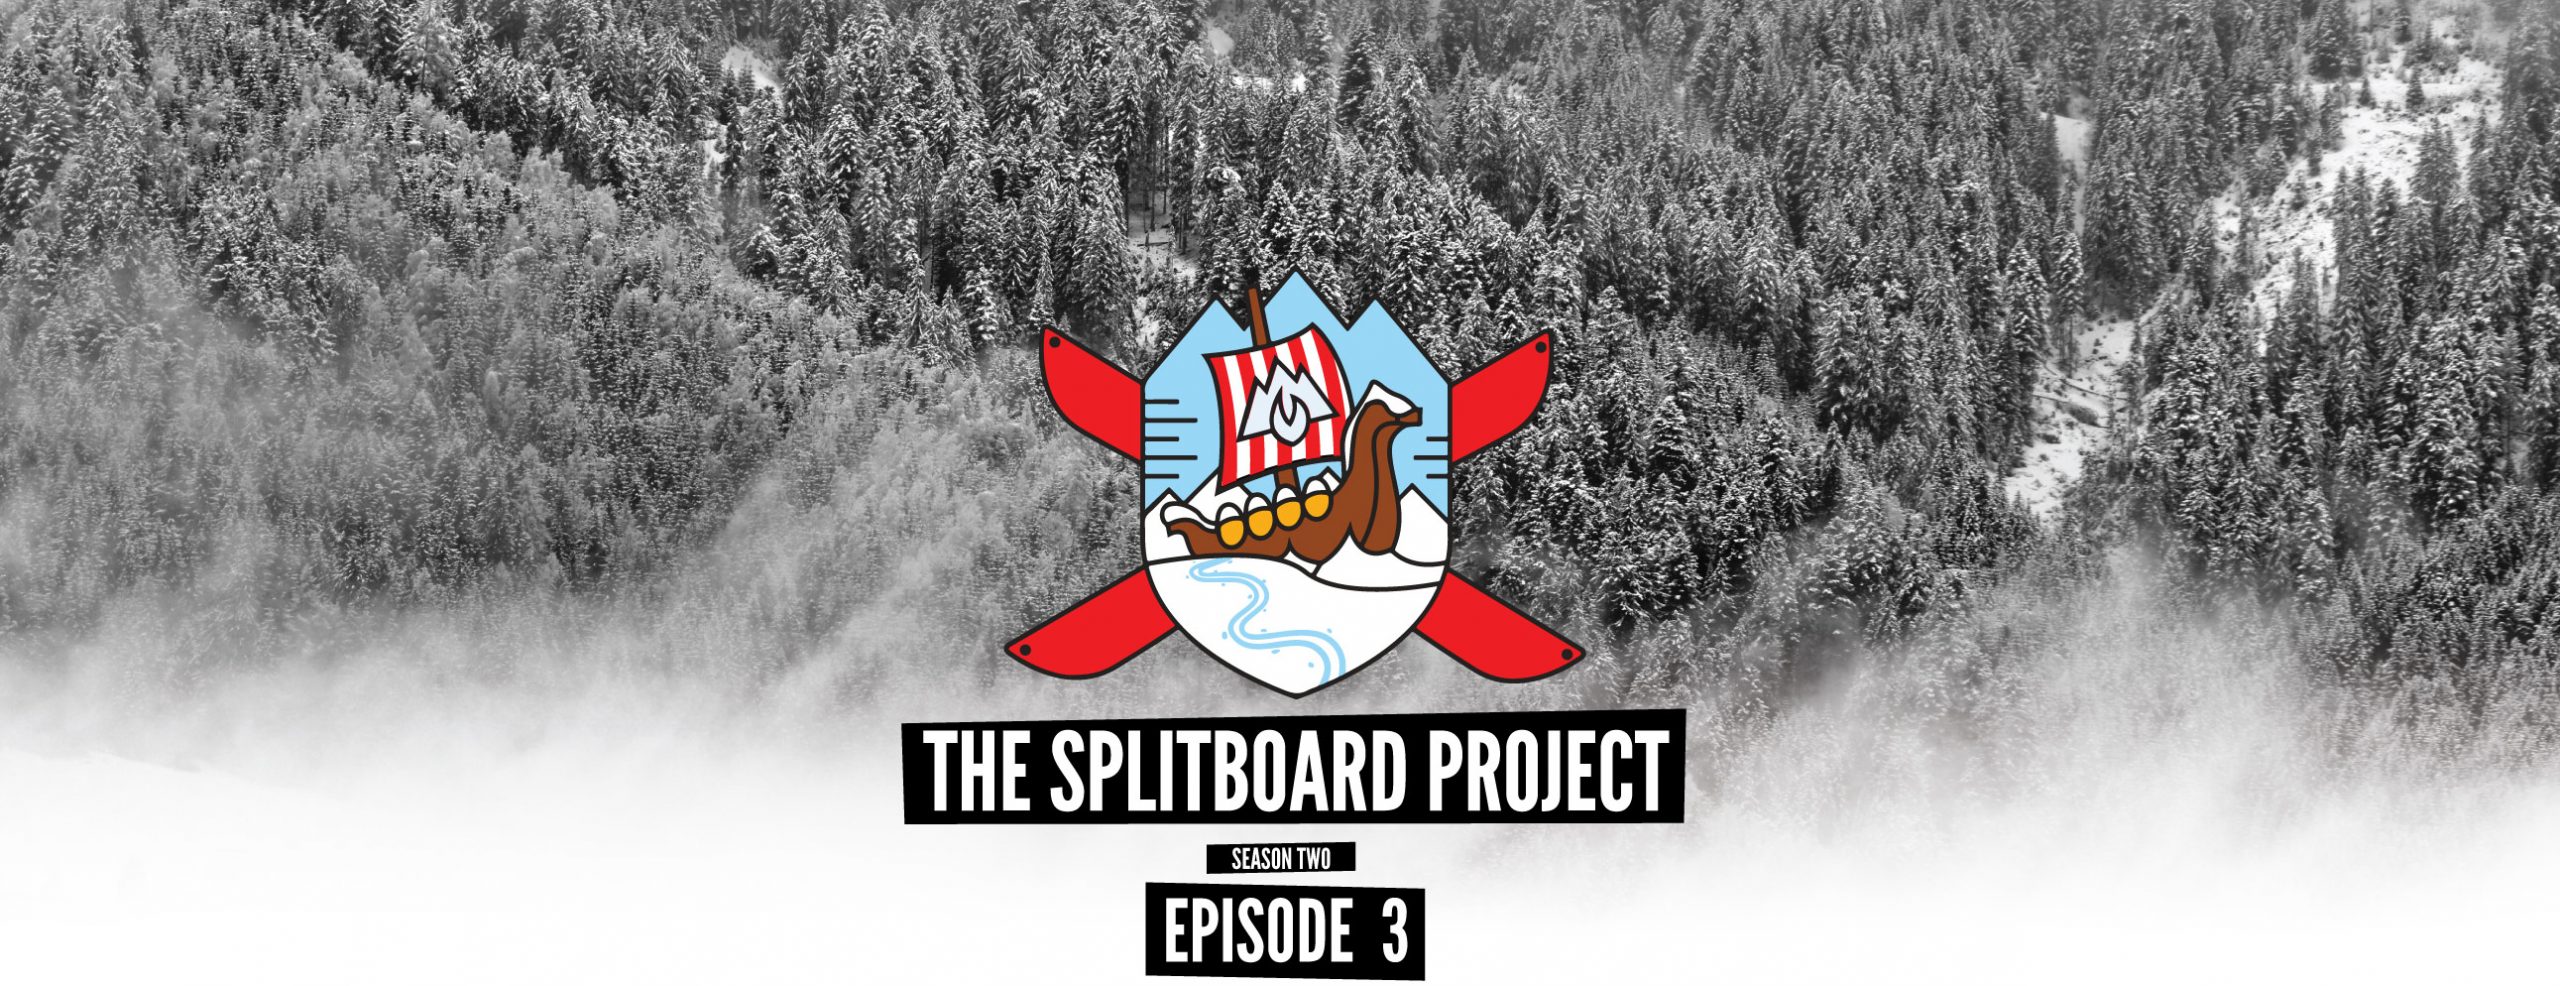 the splitboard project season 2 ep 3